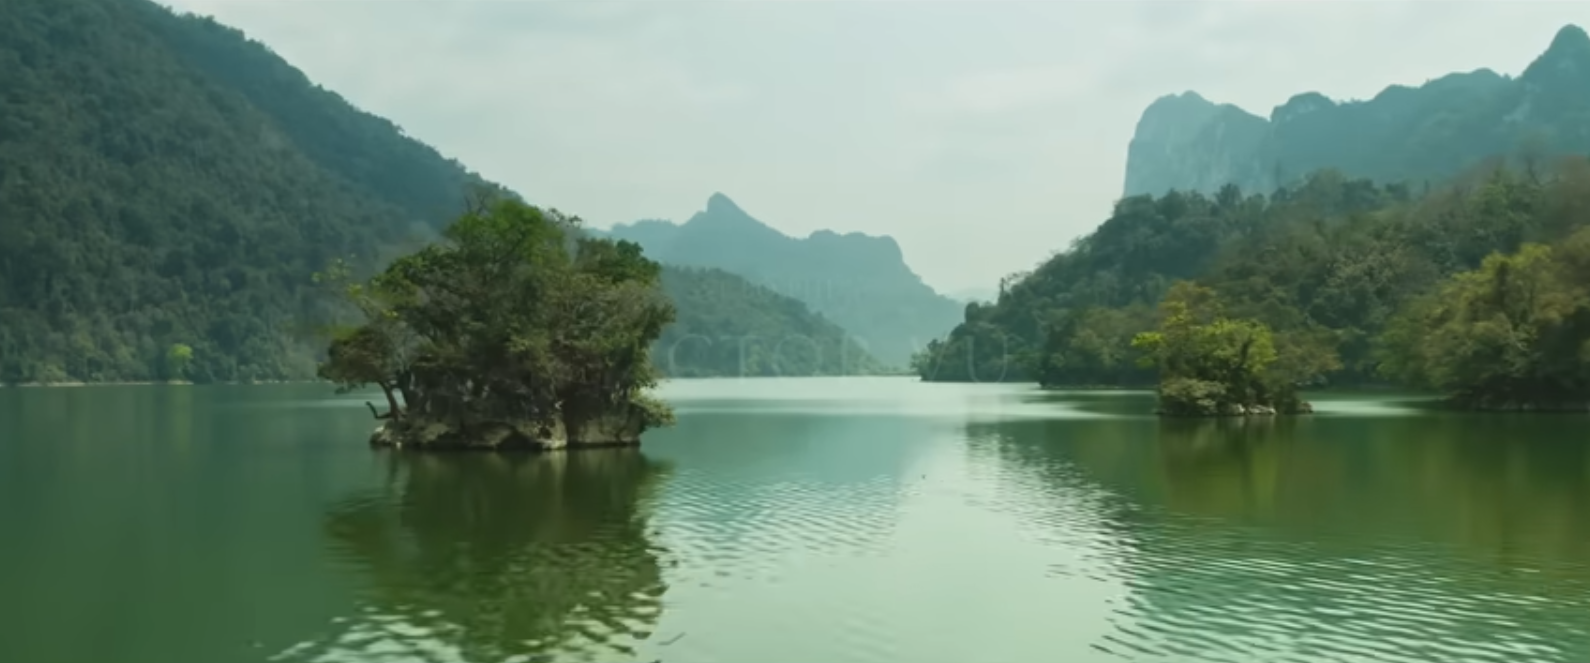 Địa điểm mở đầu phim Quang Thắng đóng, ngay gần Hà Nội, được mệnh danh là viên ngọc bích của núi rừng - Ảnh 2.